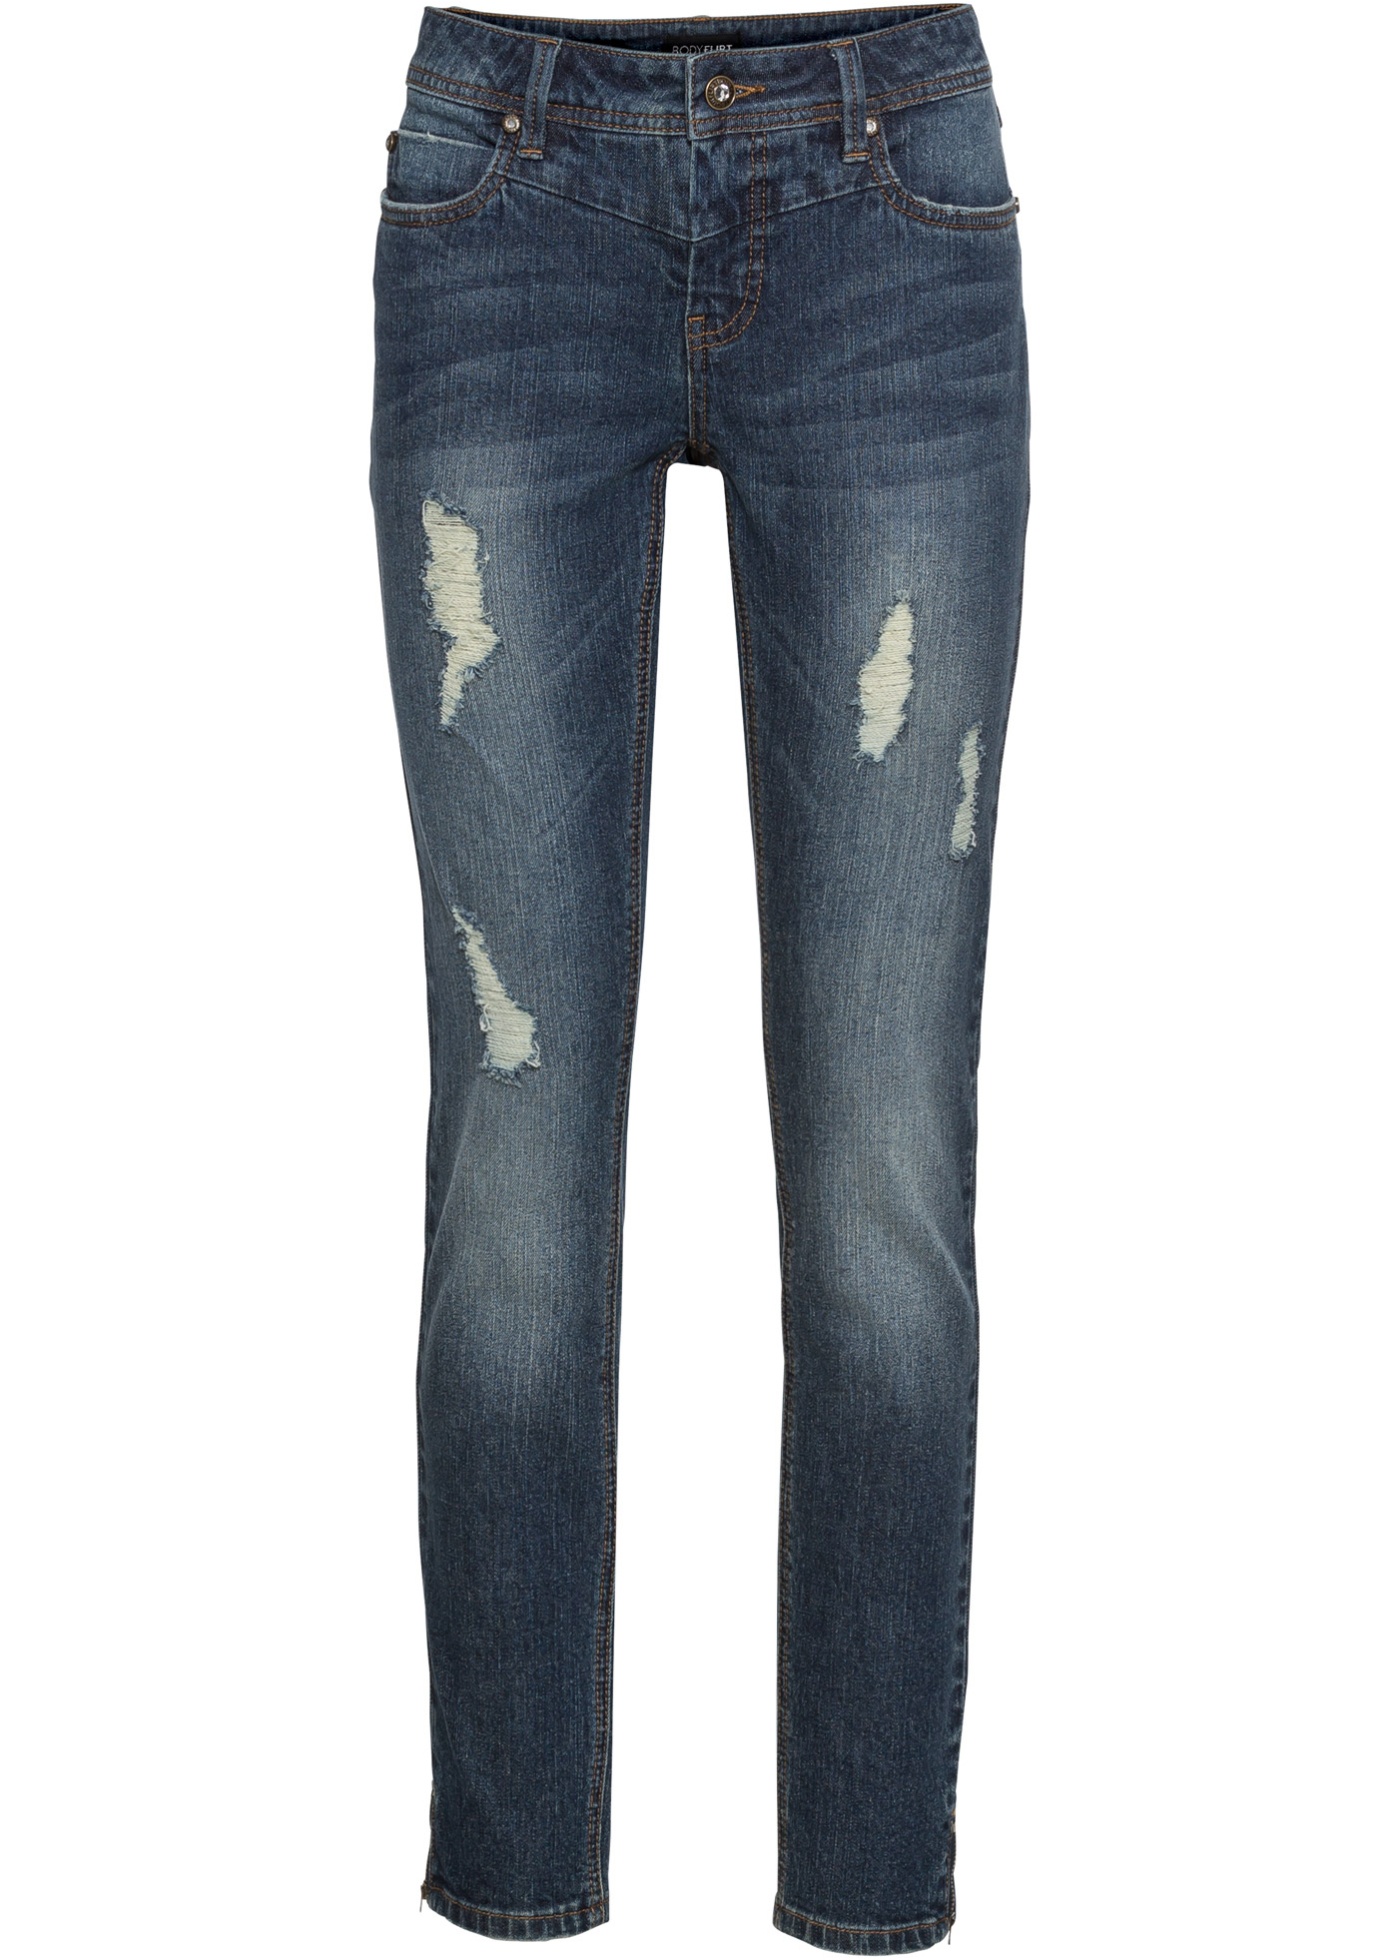 Strečové džínsy so zapínaním na zips, krátka veľkosti